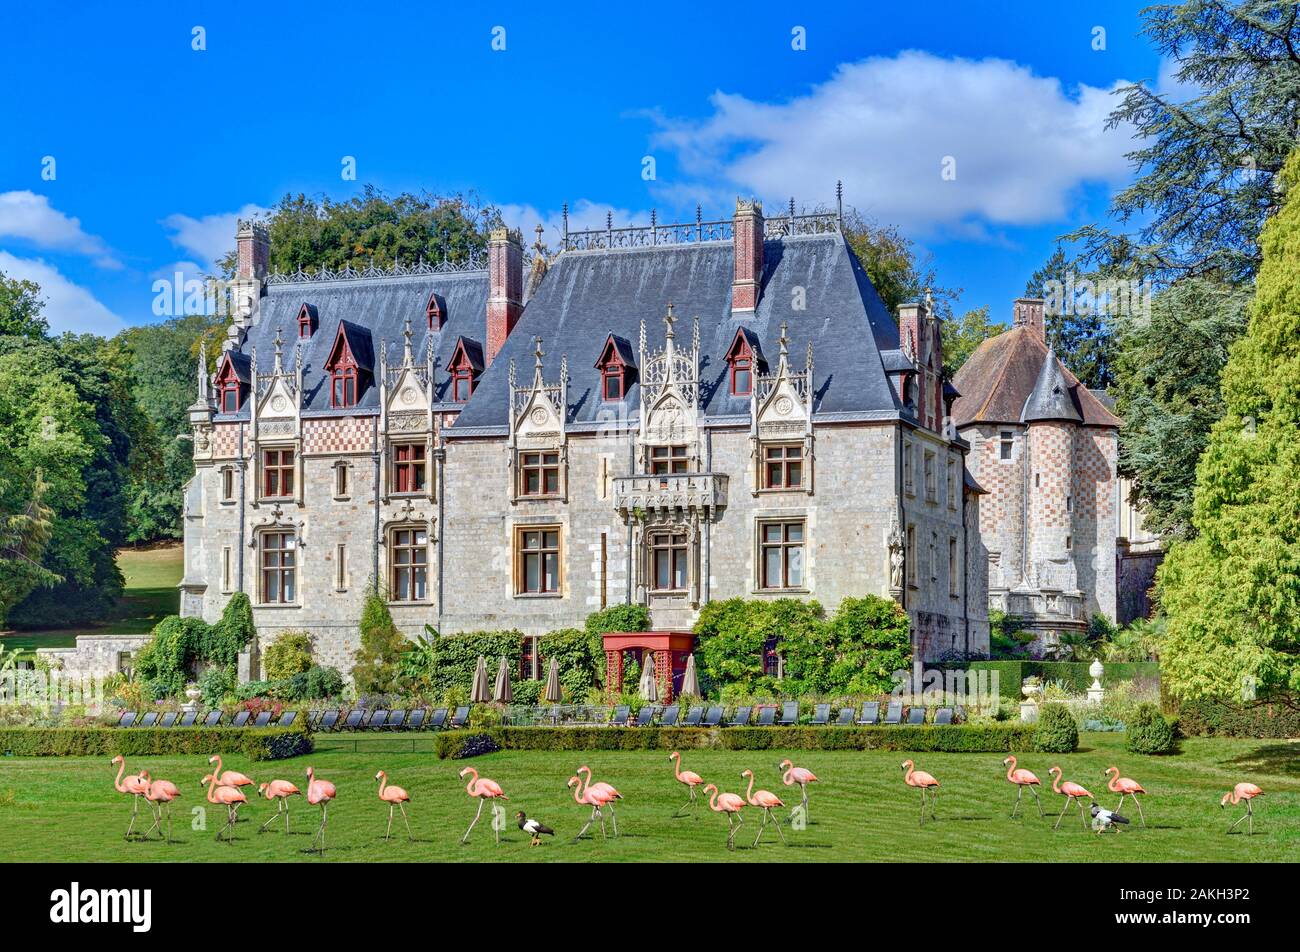 France, Seine-Maritime, Clères, le château et le parc zoologique où flamants roses (Phoenicopterus chilensis) vivent Banque D'Images